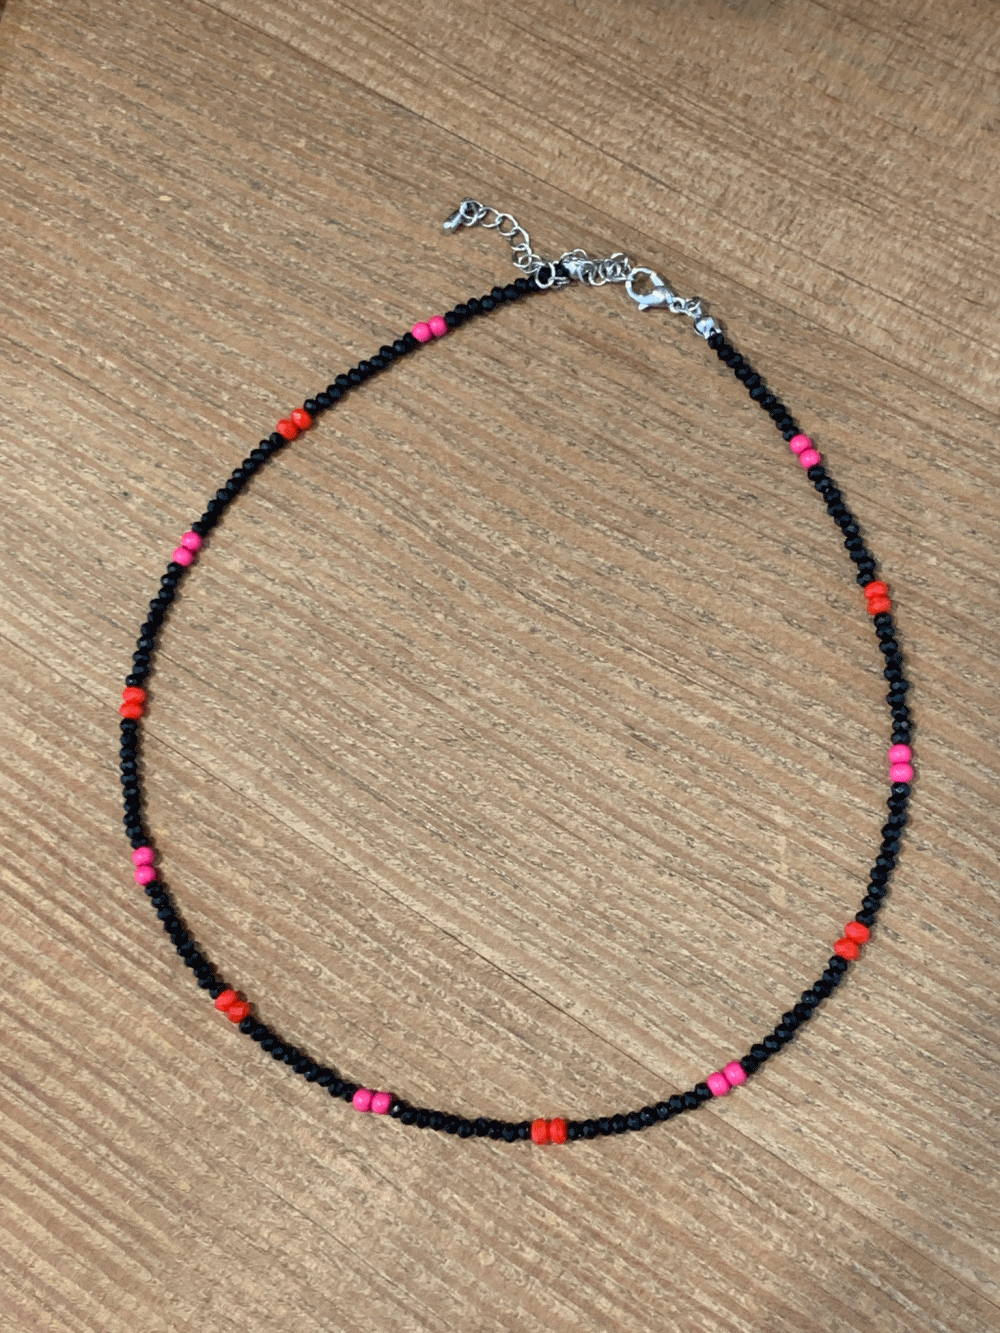 [Acc] Cherry Bizz Choker Necklace / one color